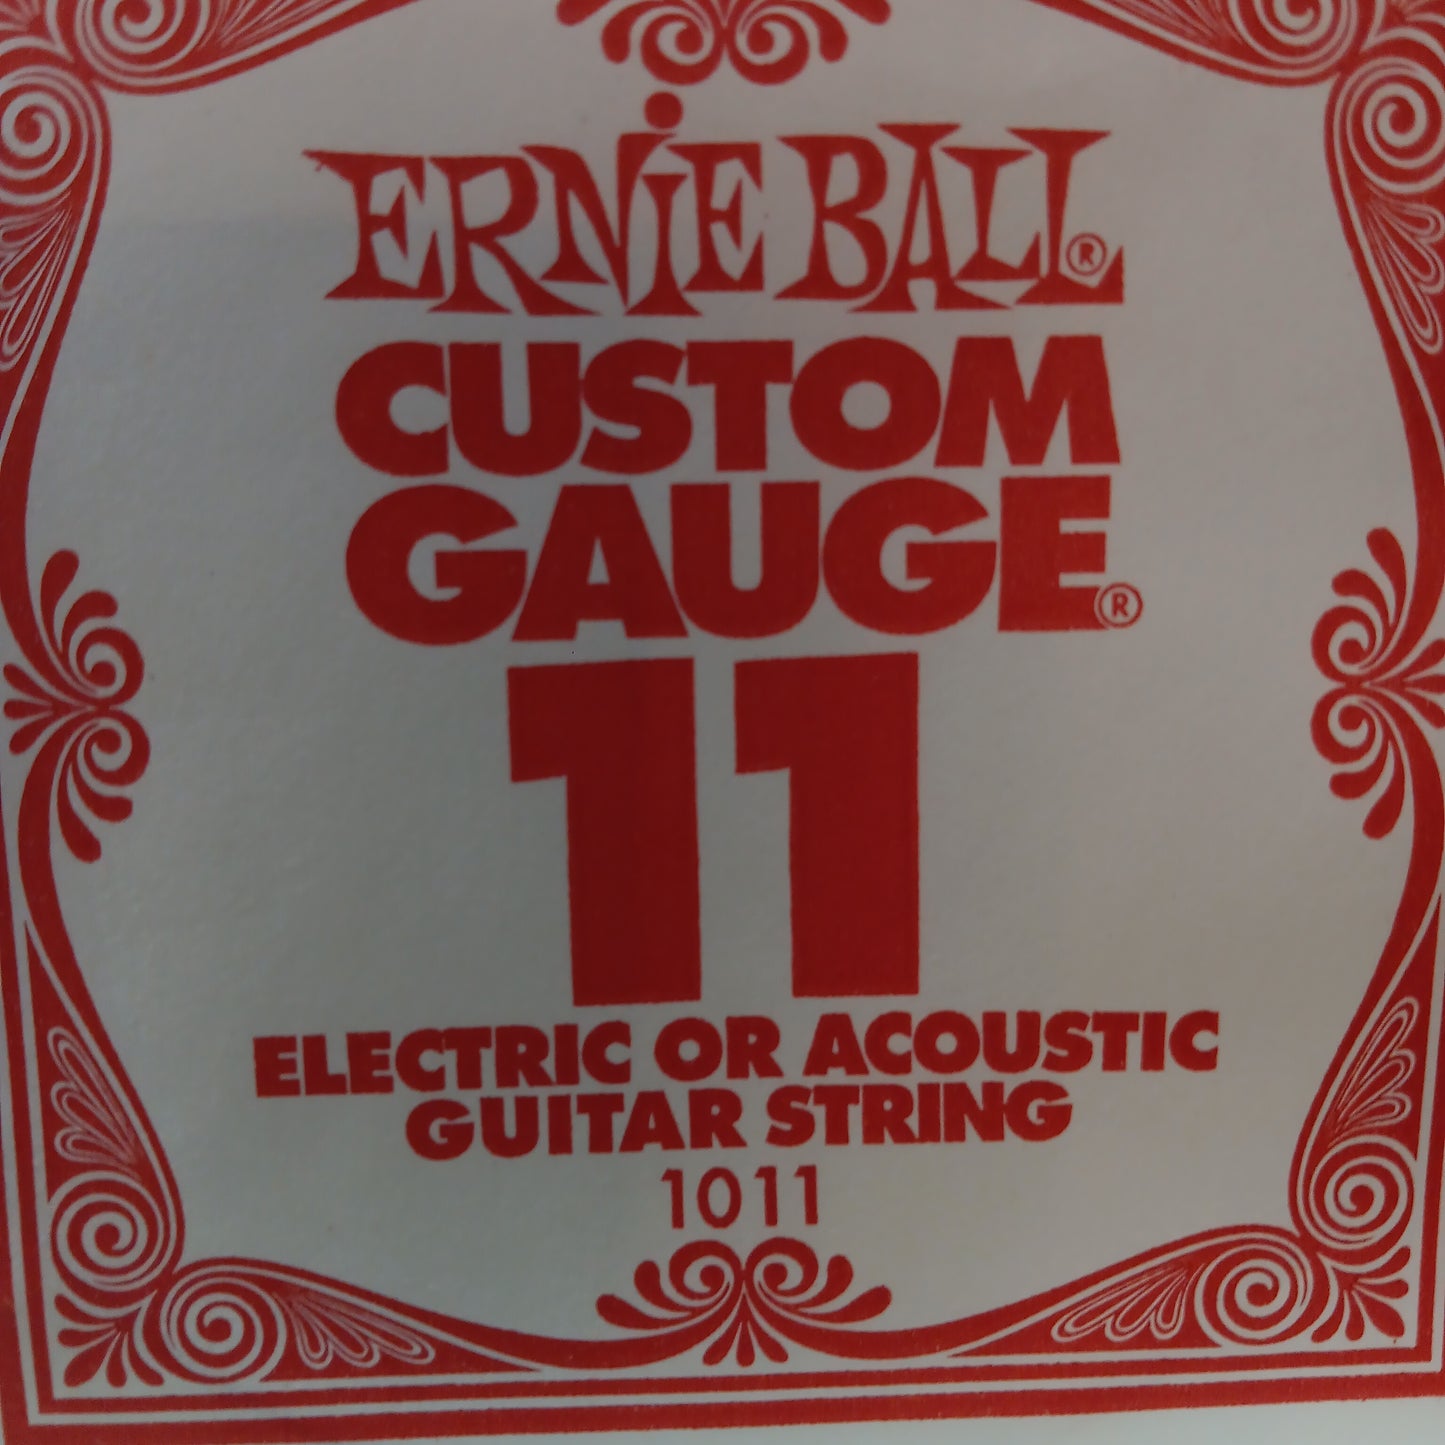 Ernie Ball Custom Gauge Nickel Wound Single Strings 1011/11
Gauge